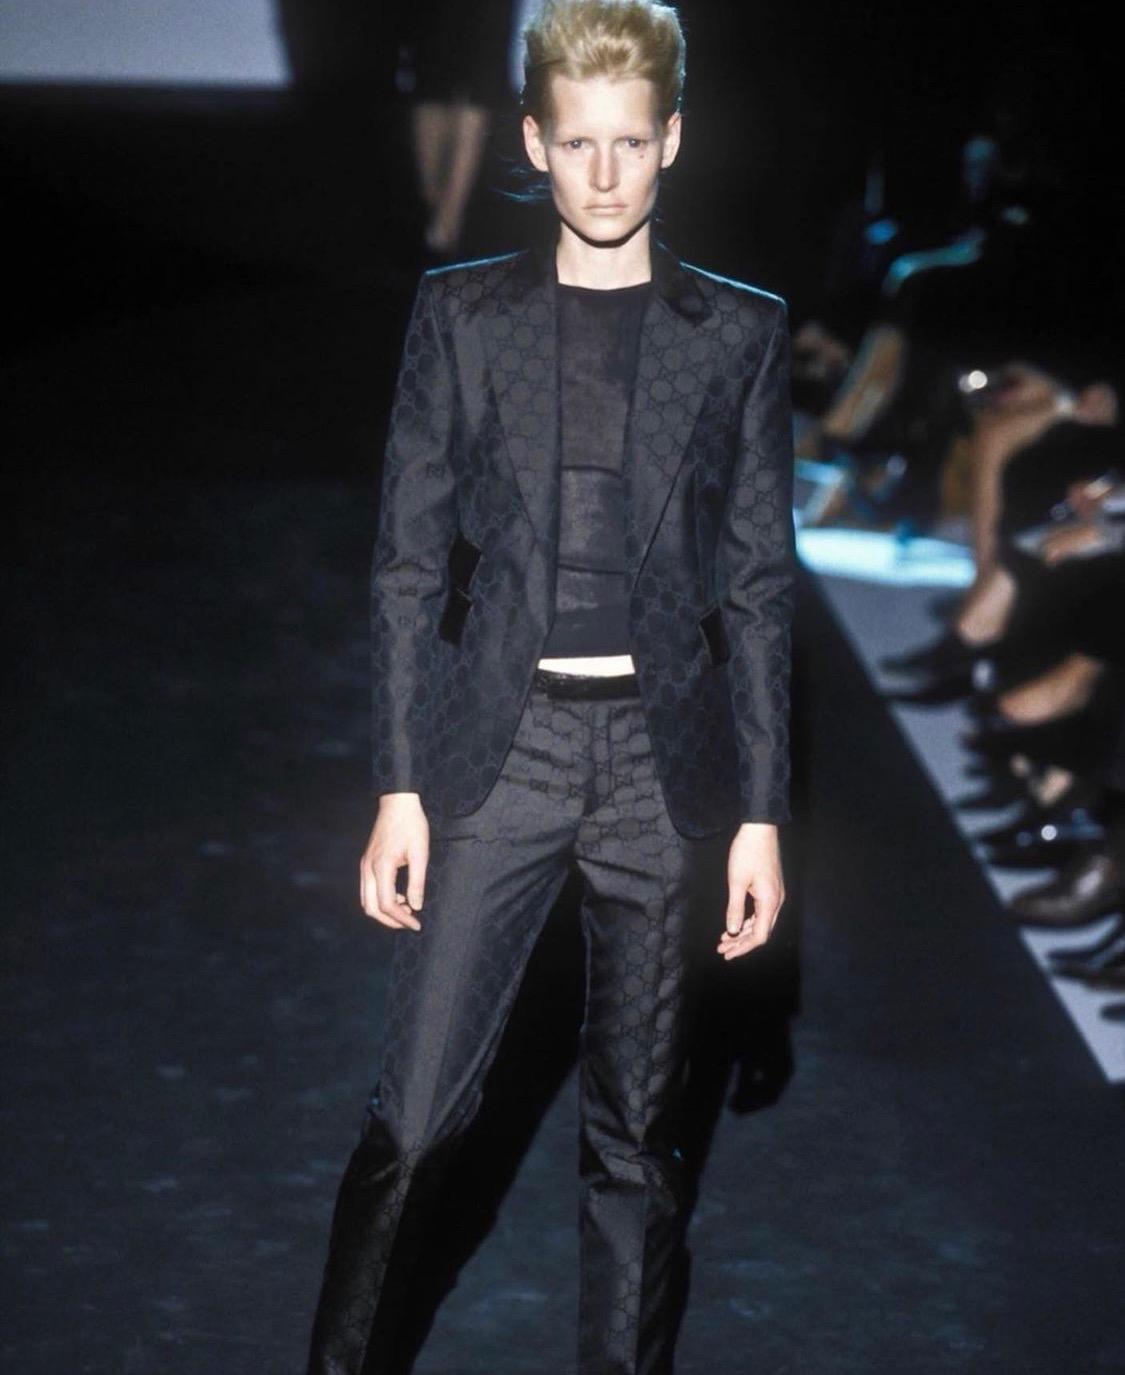 Présentation d'un rare ensemble pantalon monogramme GG noir de Gucci, dessiné par Tom Ford. Cet imprimé GG tissé a été mis en évidence sur de nombreux looks lors du défilé Gucci printemps/été 1998. Le costume est doté de fermetures à boutons cachés